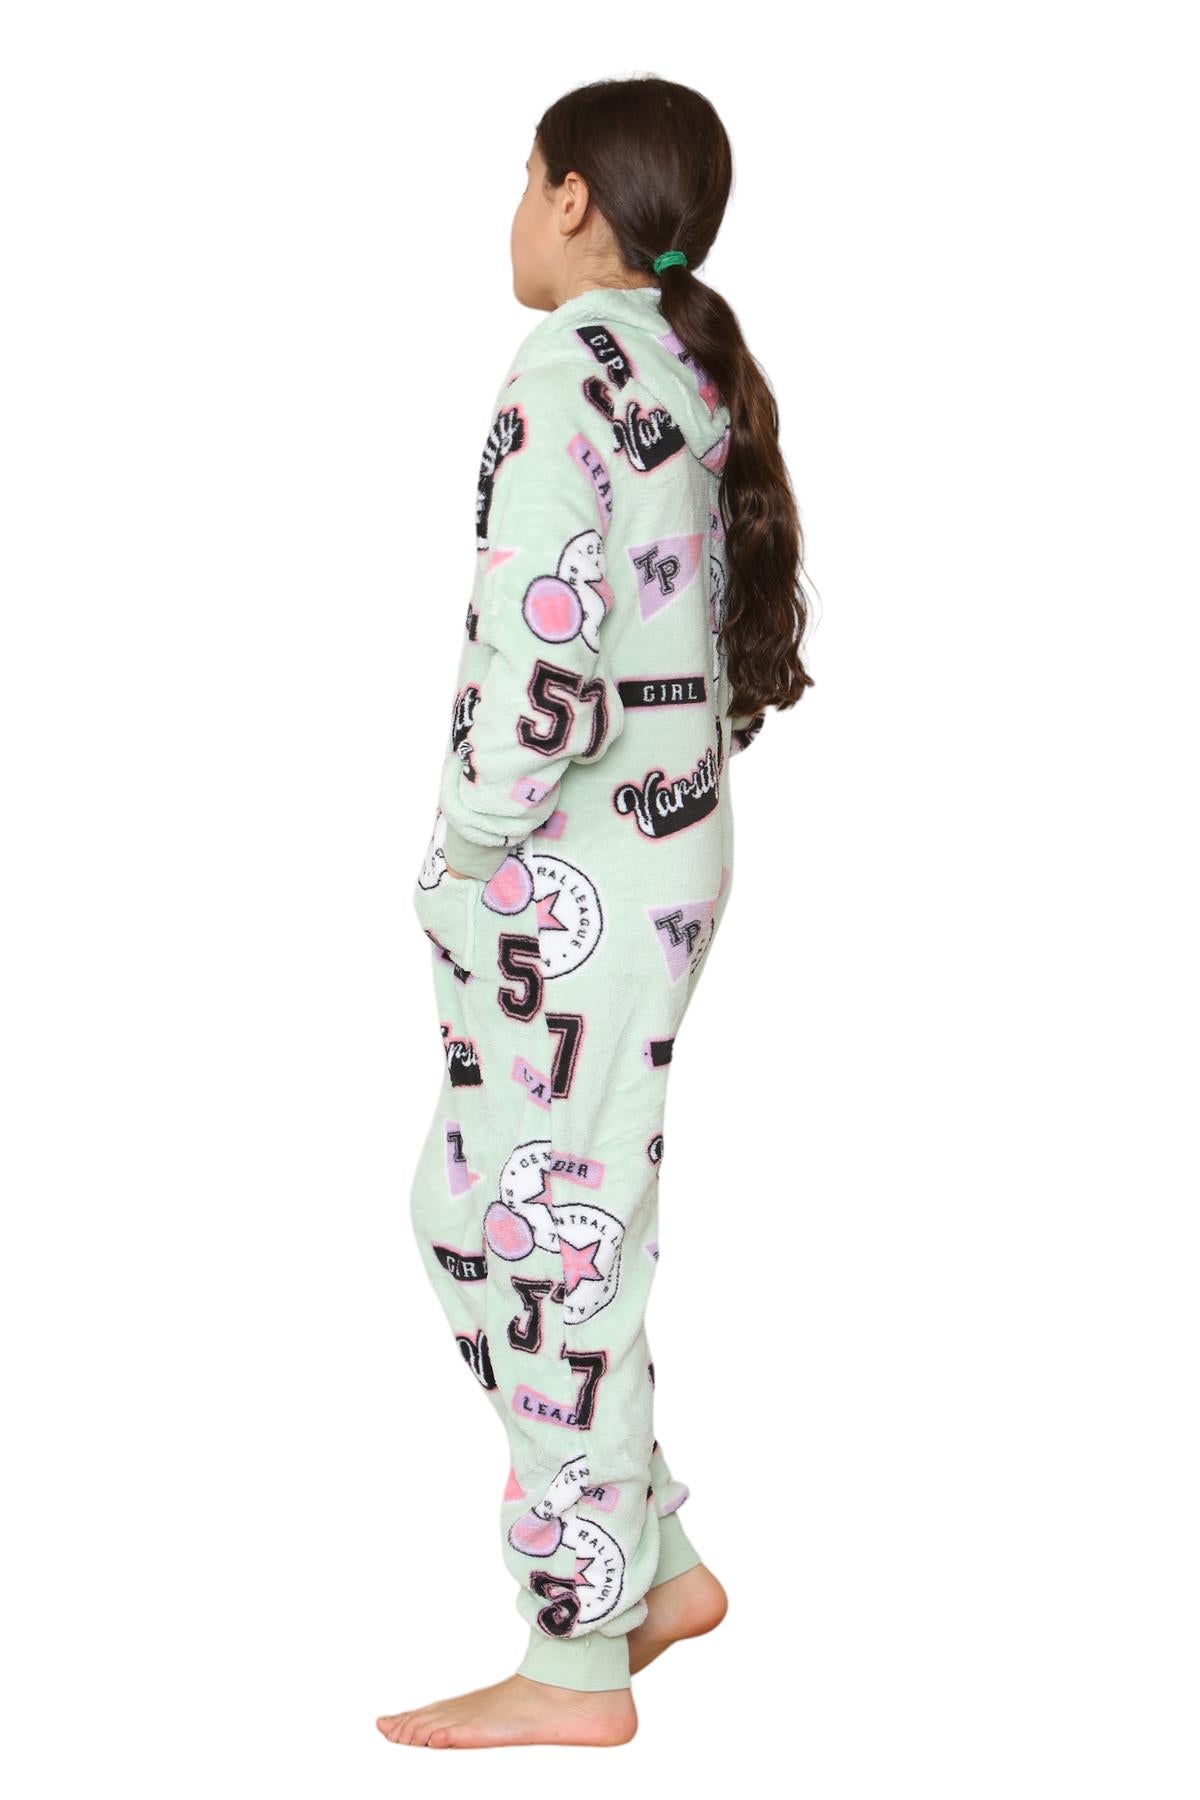 Kids Fleece A2Z Onesie One Piece Pyjamas Varsity Print Sleepsuit For Boys Girls